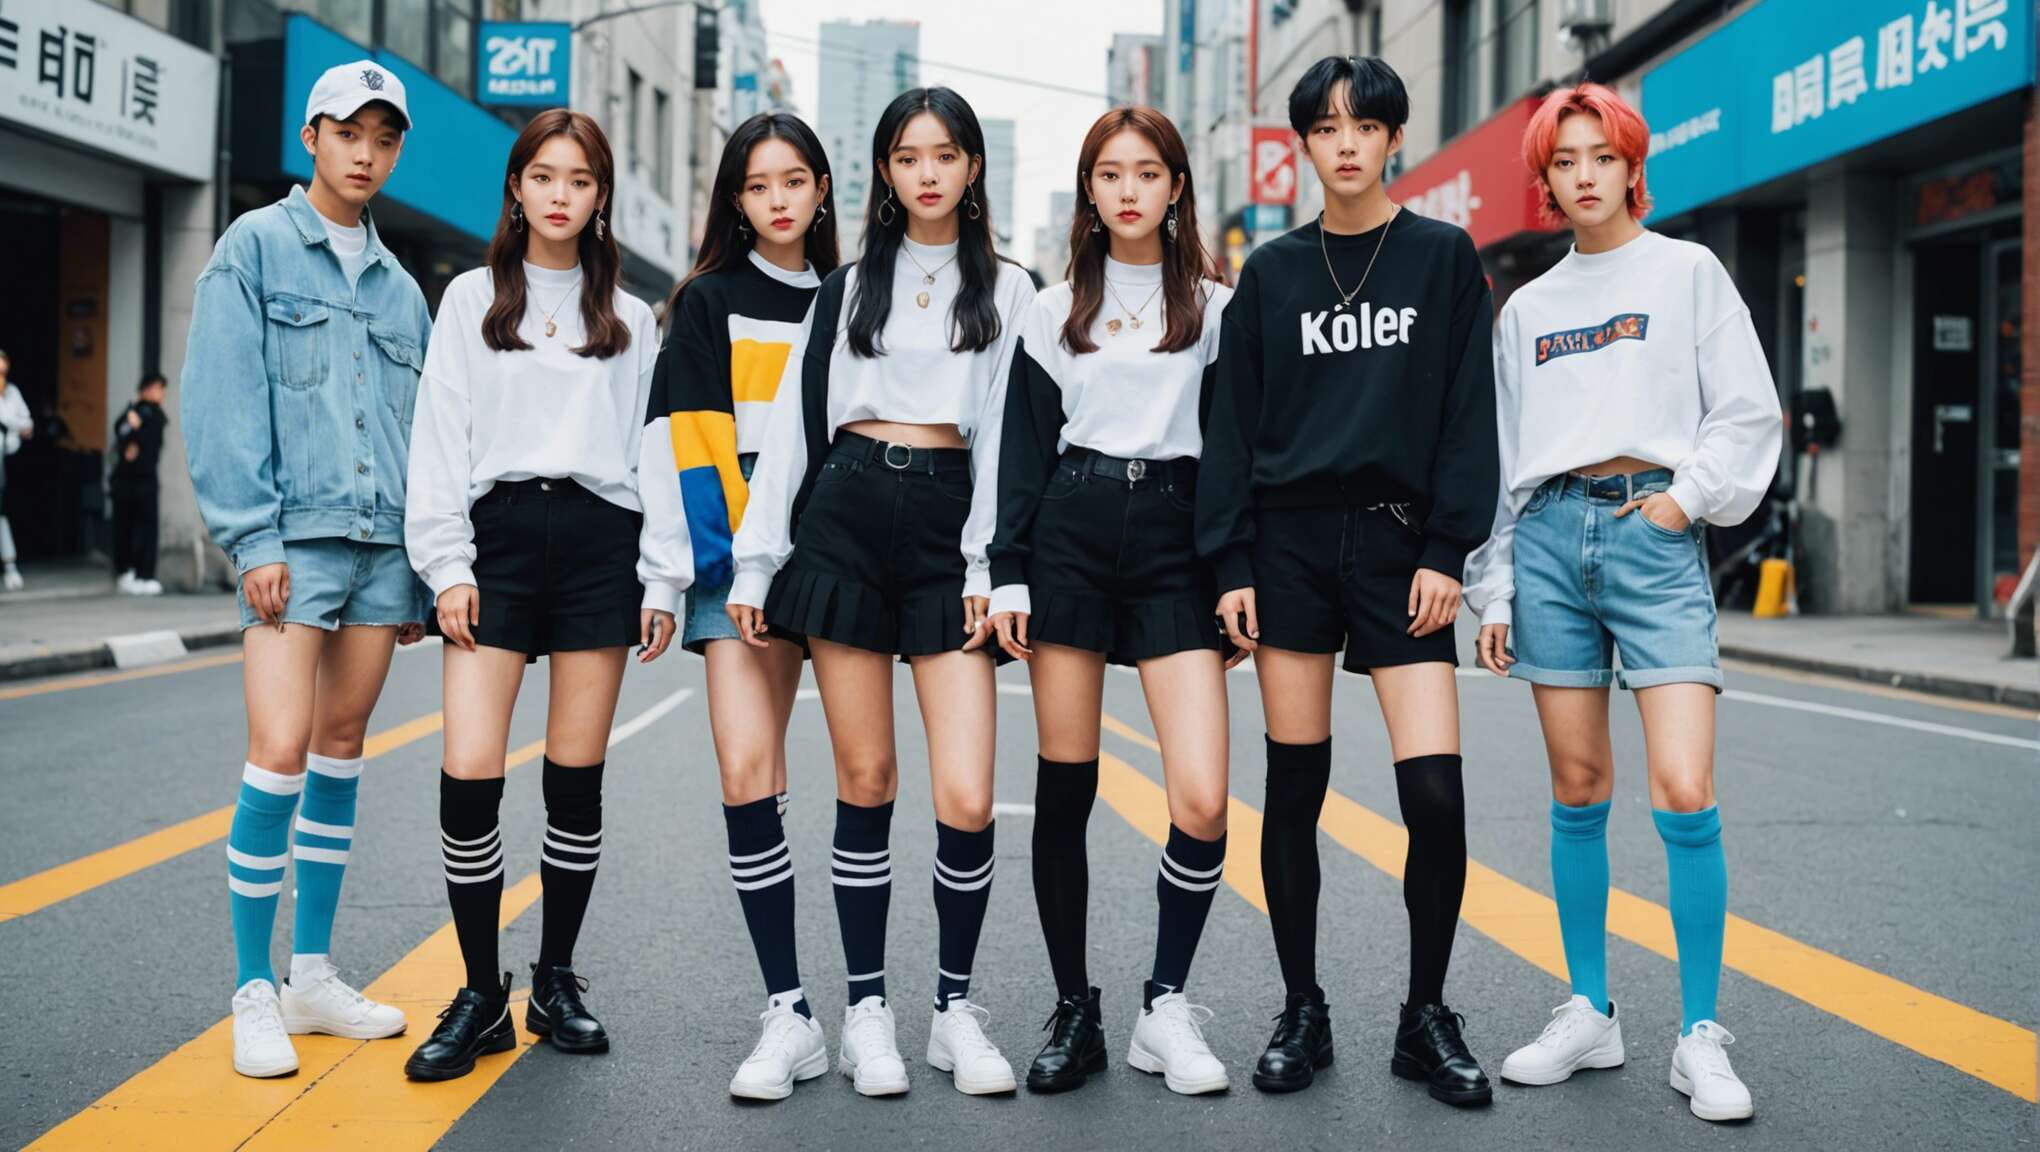 Tendance des chaussettes hautes chez les idoles de la K-pop : comment s'approprier le look ?